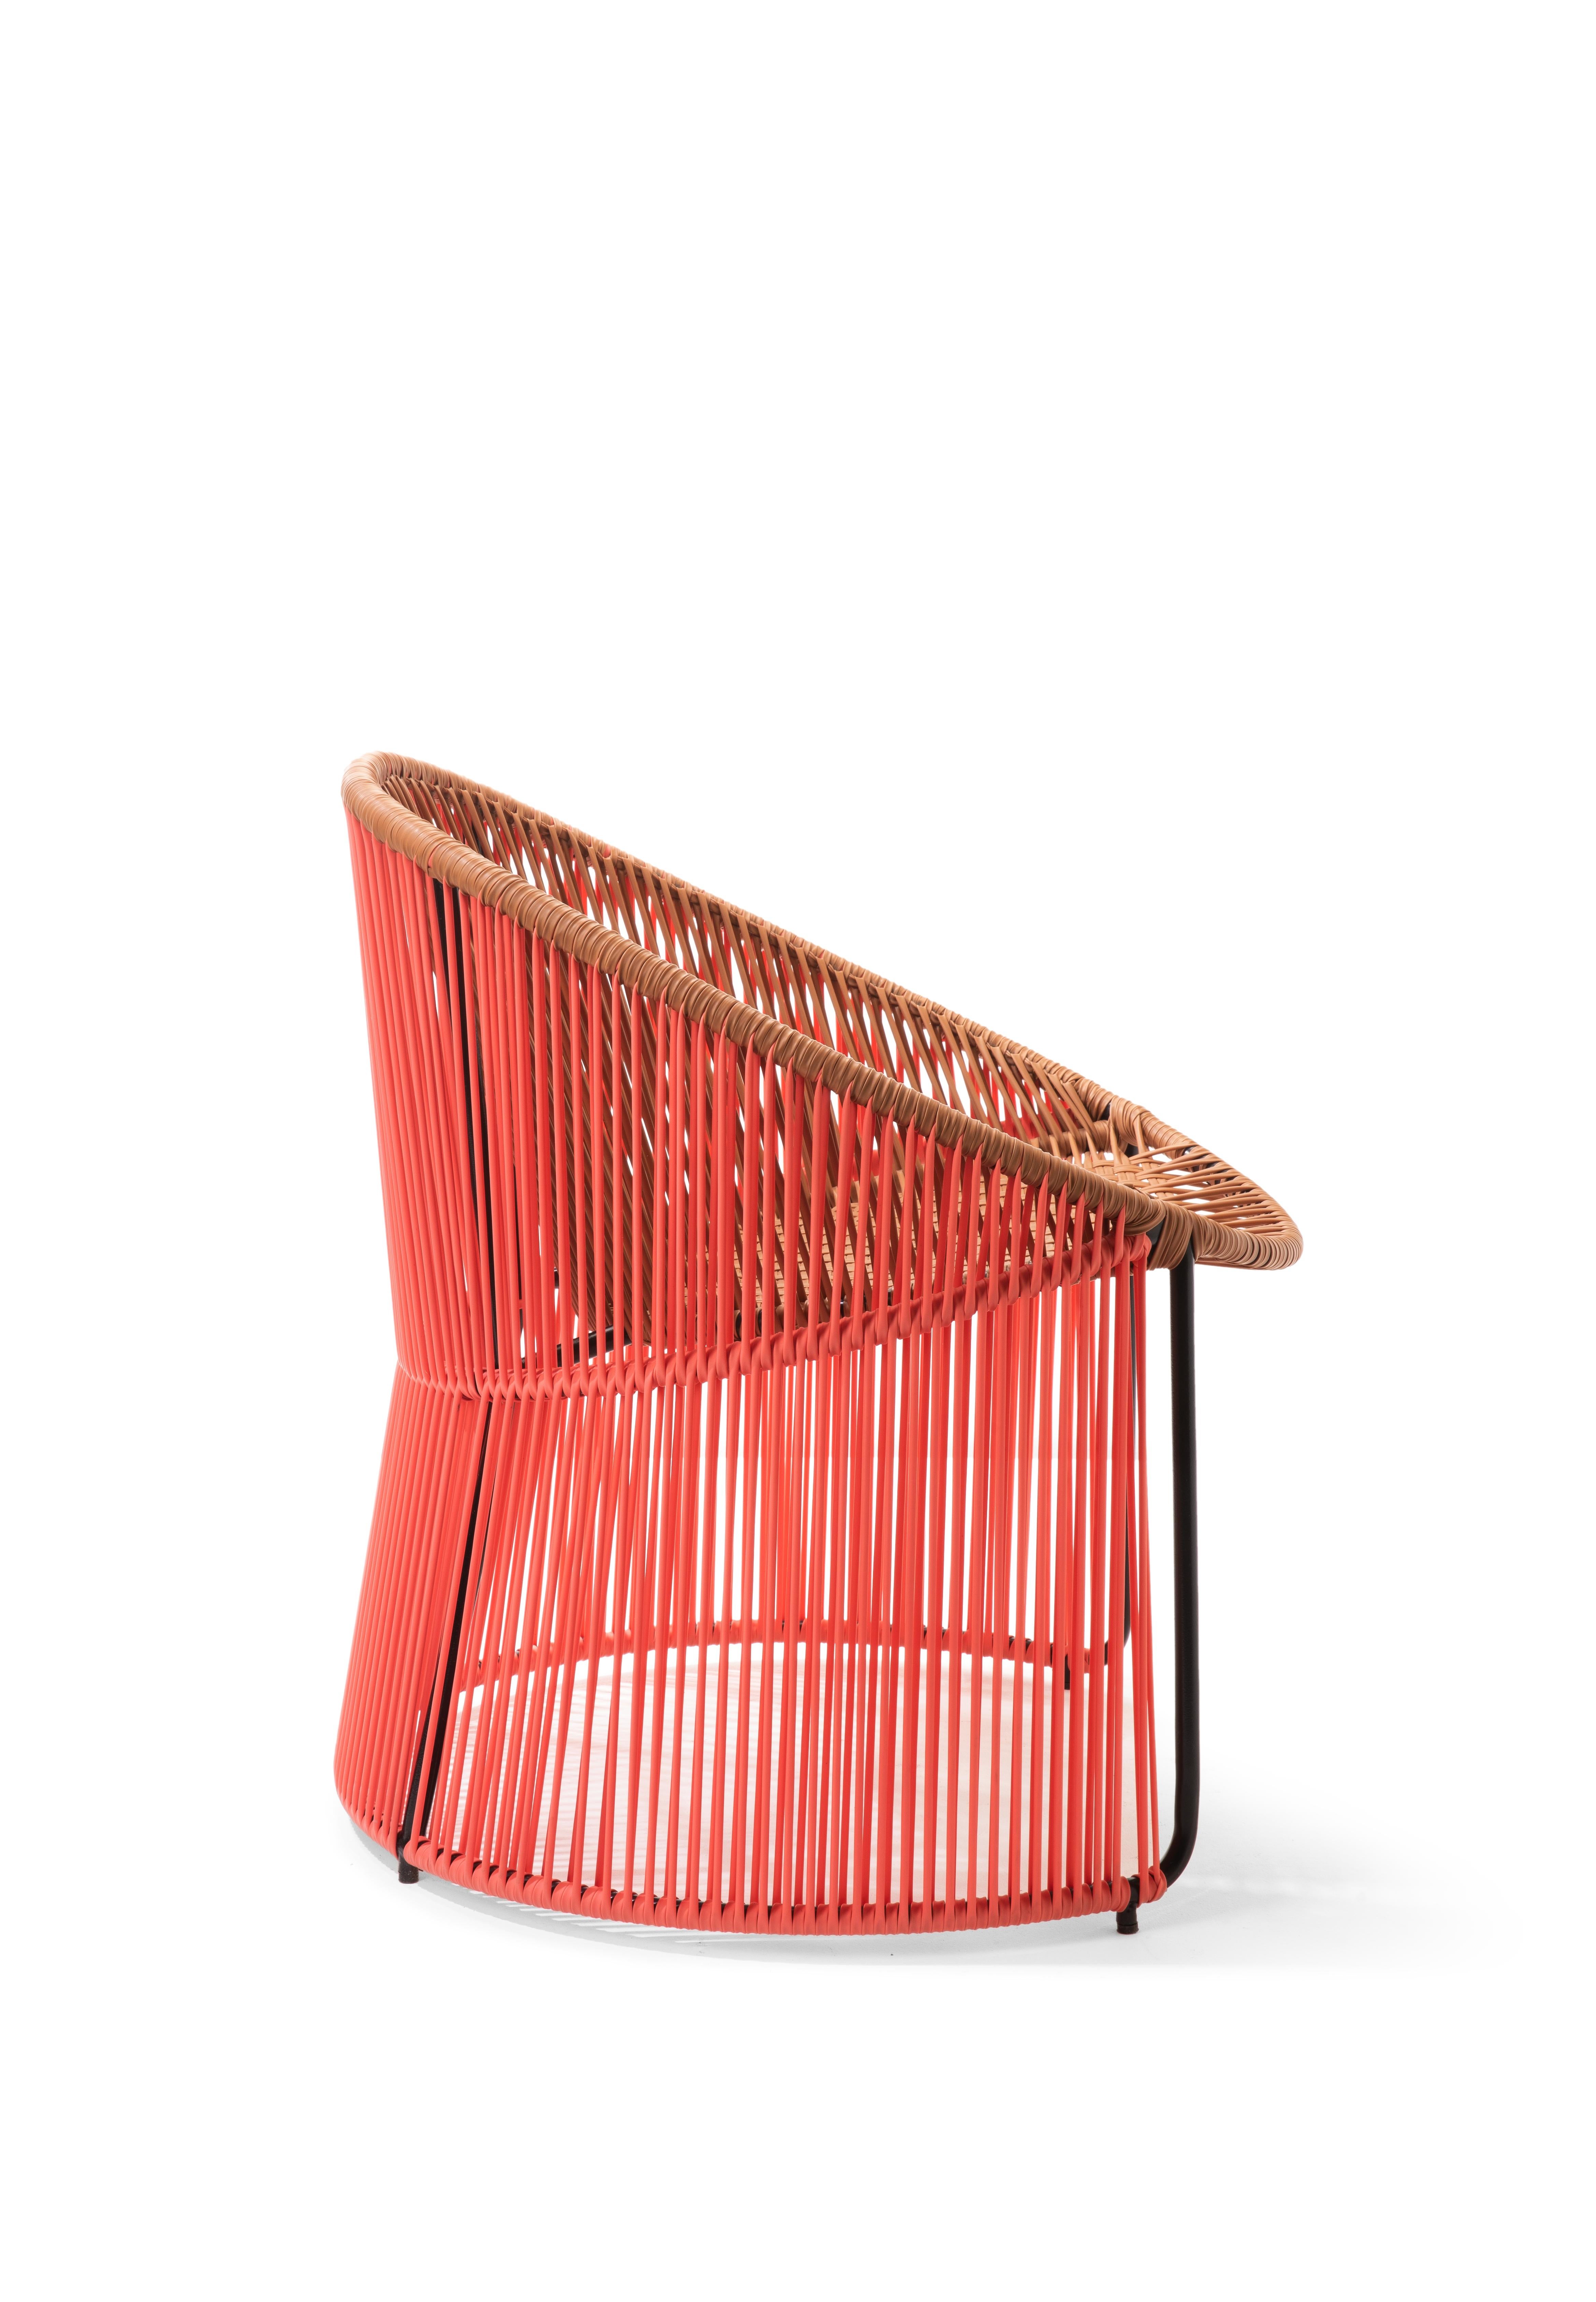 German Coral Cartagenas Lounge Chair by Sebastian Herkner